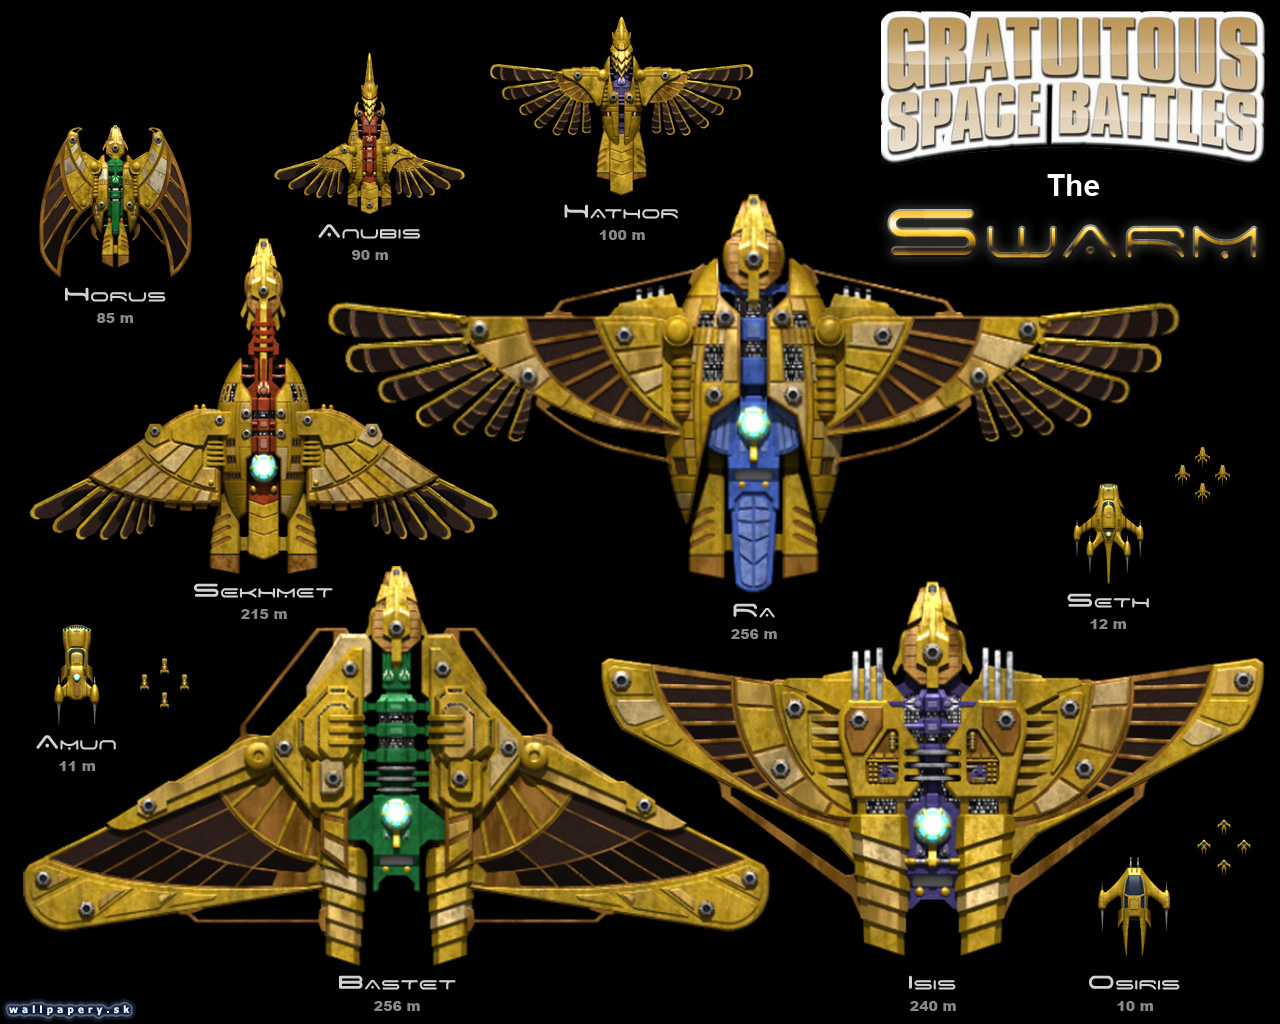 Gratuitous Space Battles: The Swarm - wallpaper 1